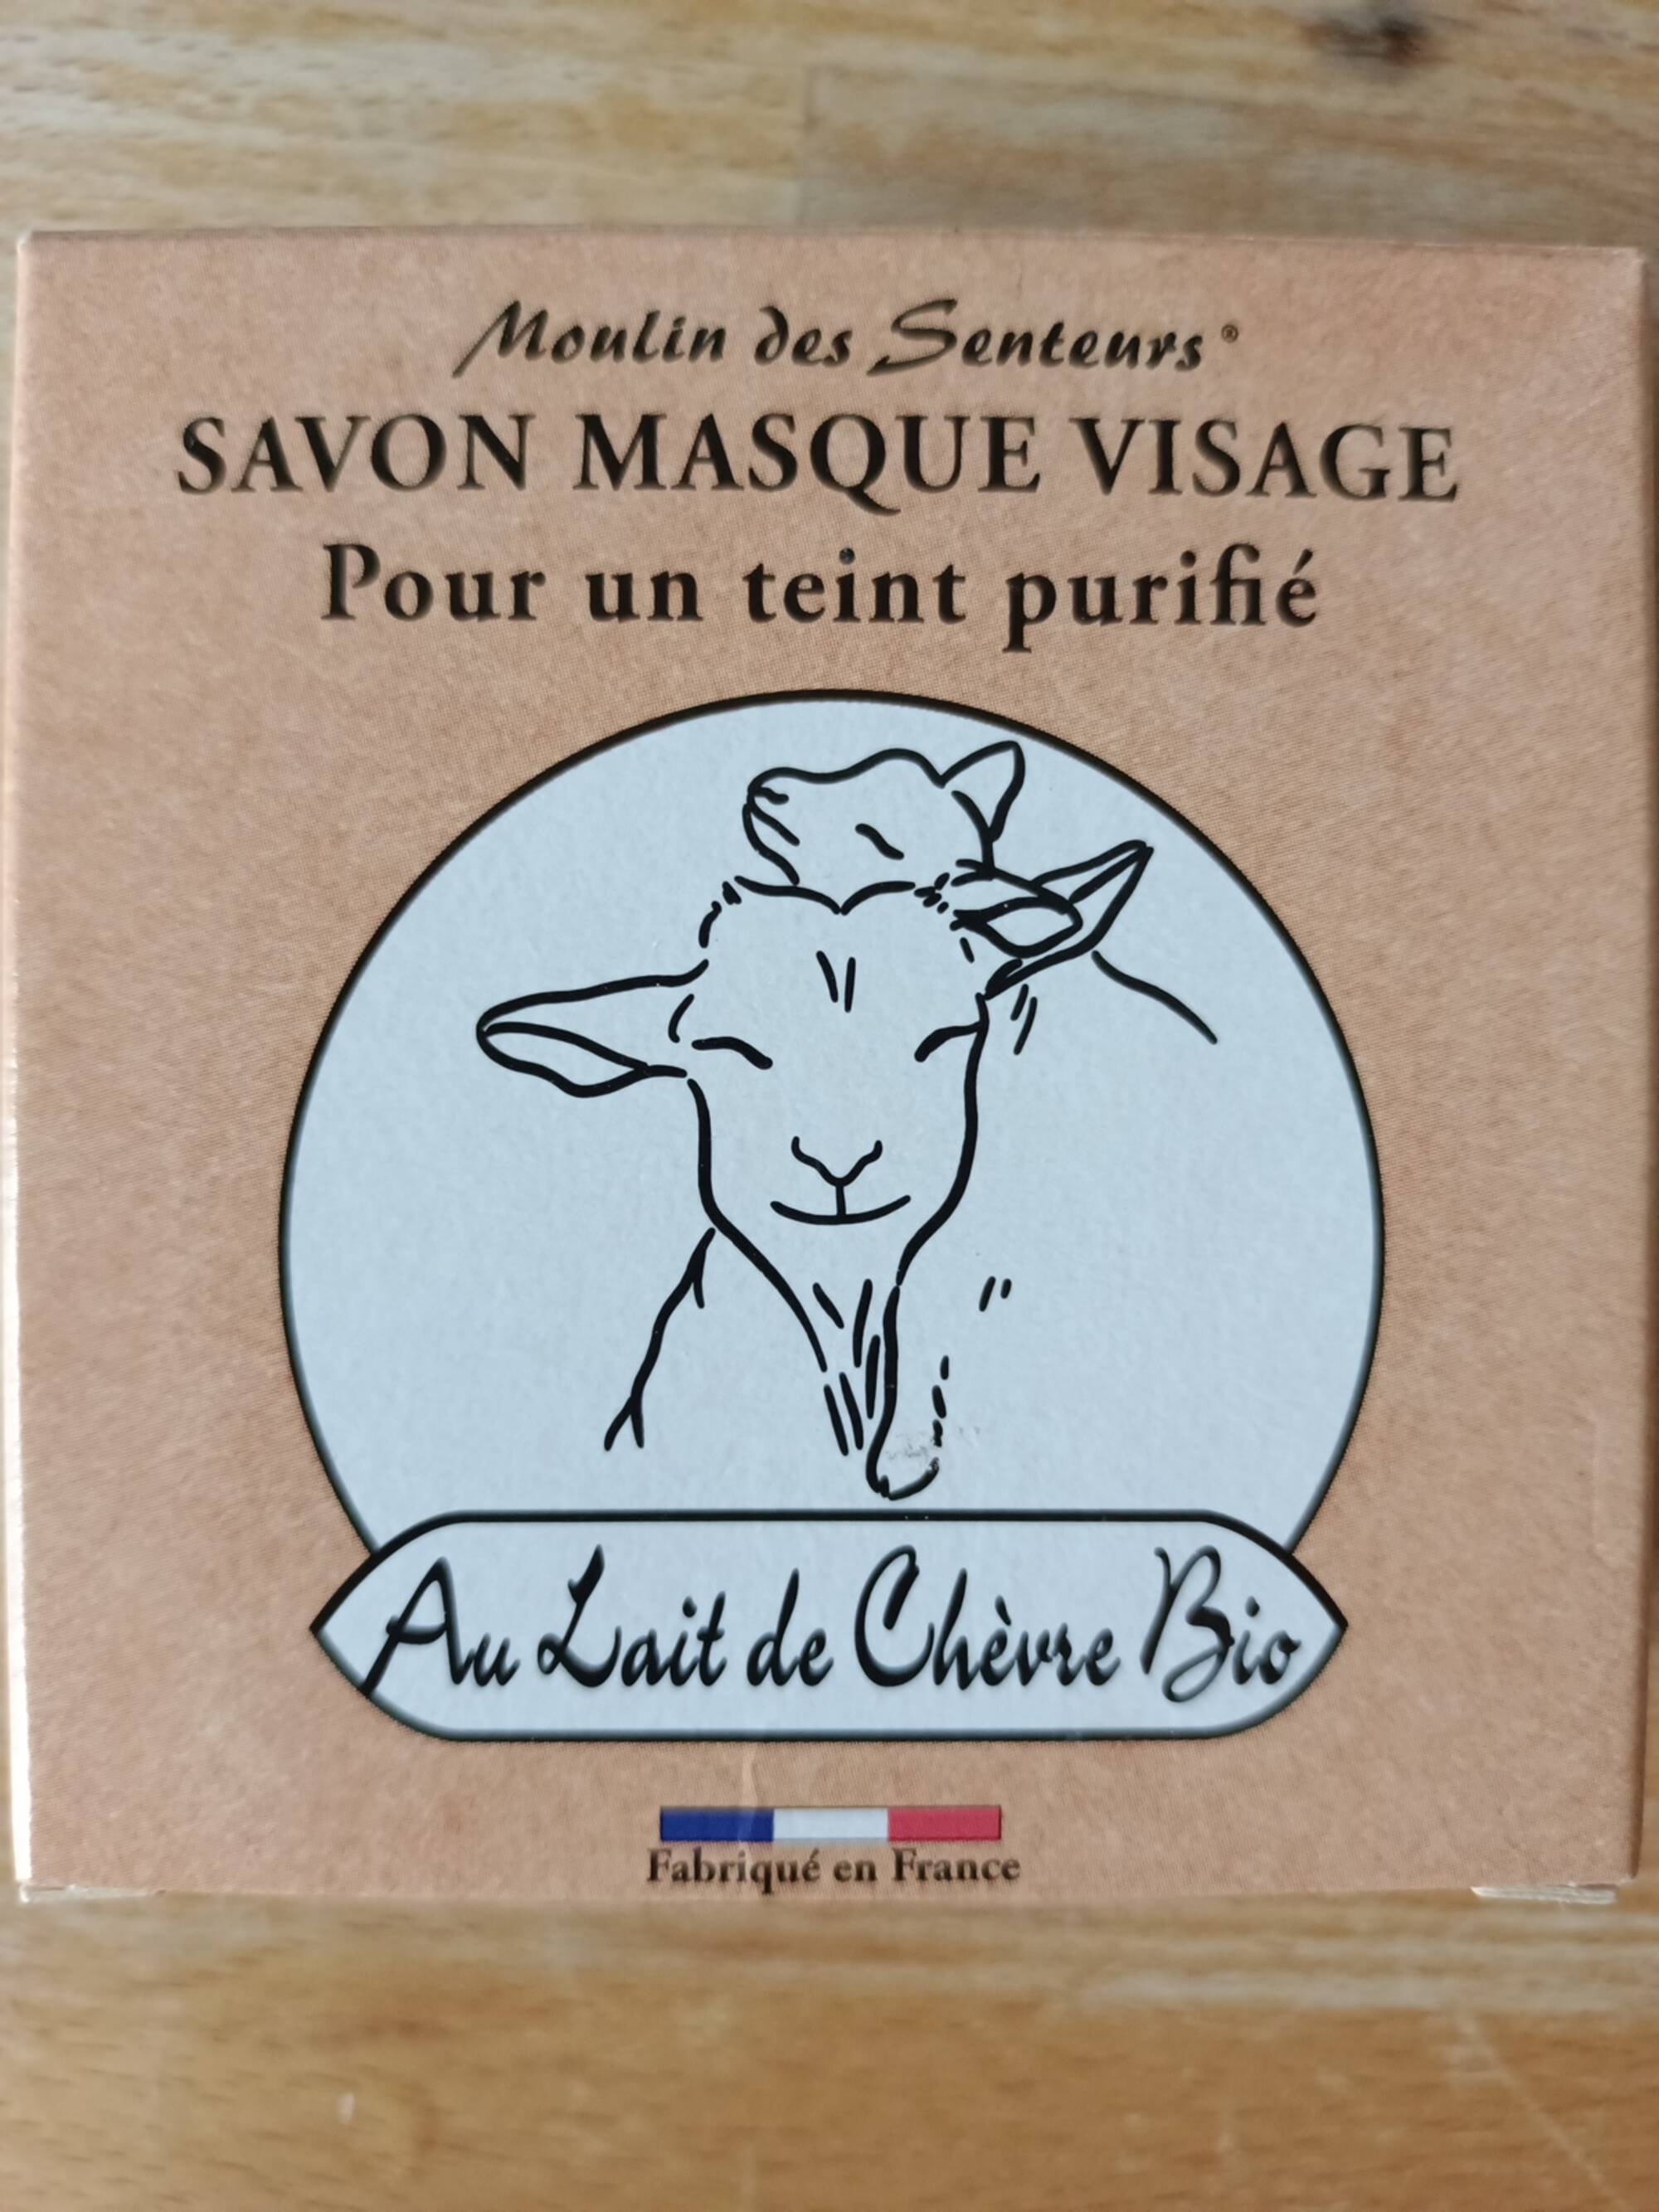 MOULIN DES SENTEURS - Savon masque visage au lait de chèvre bio